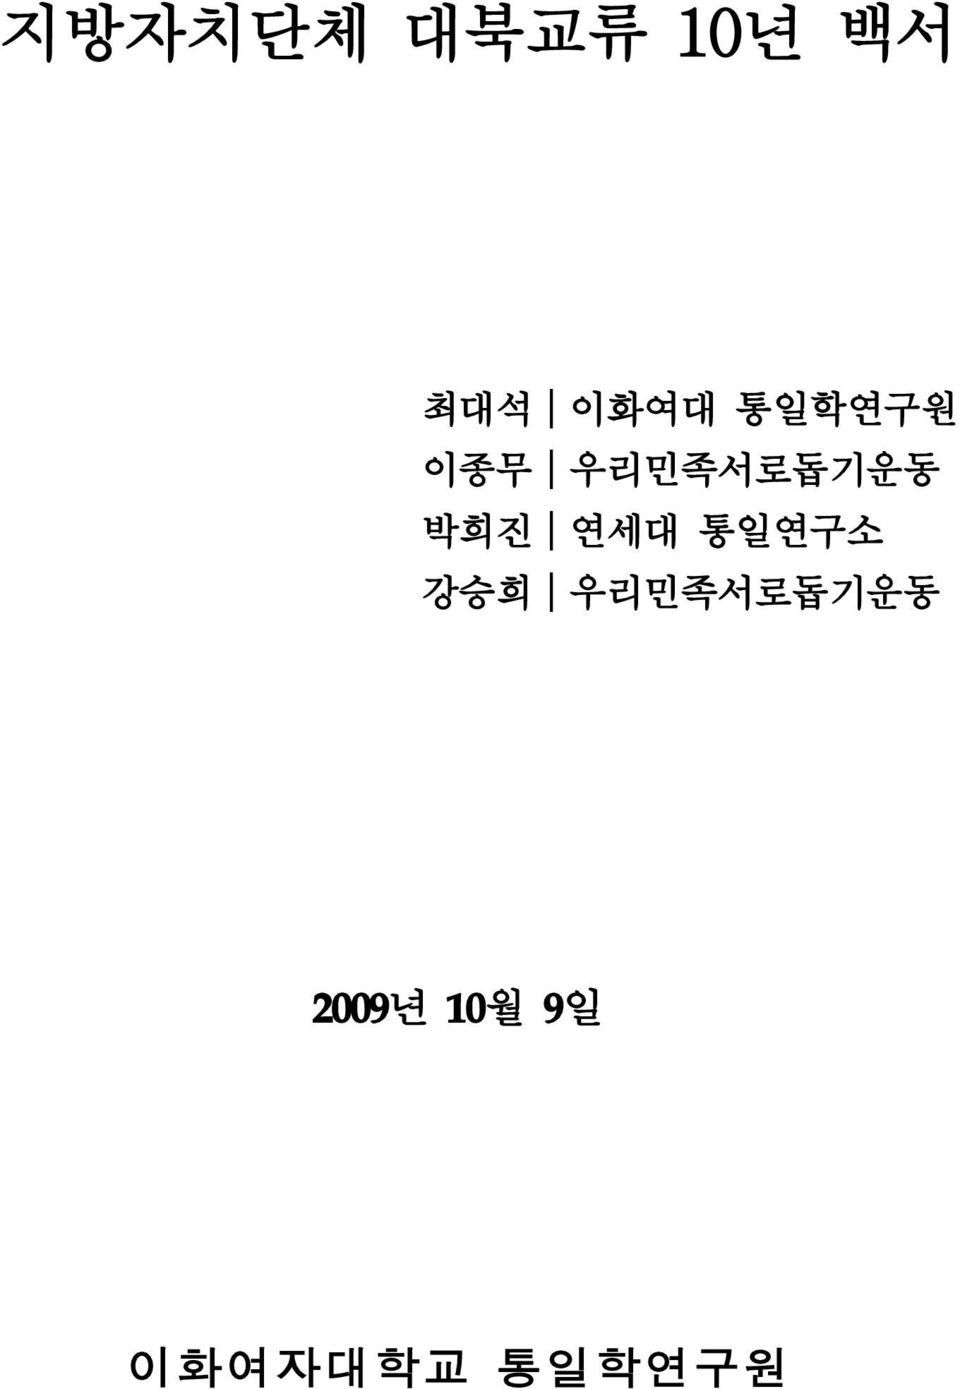 박희진 연세대 통일연구소 강승희